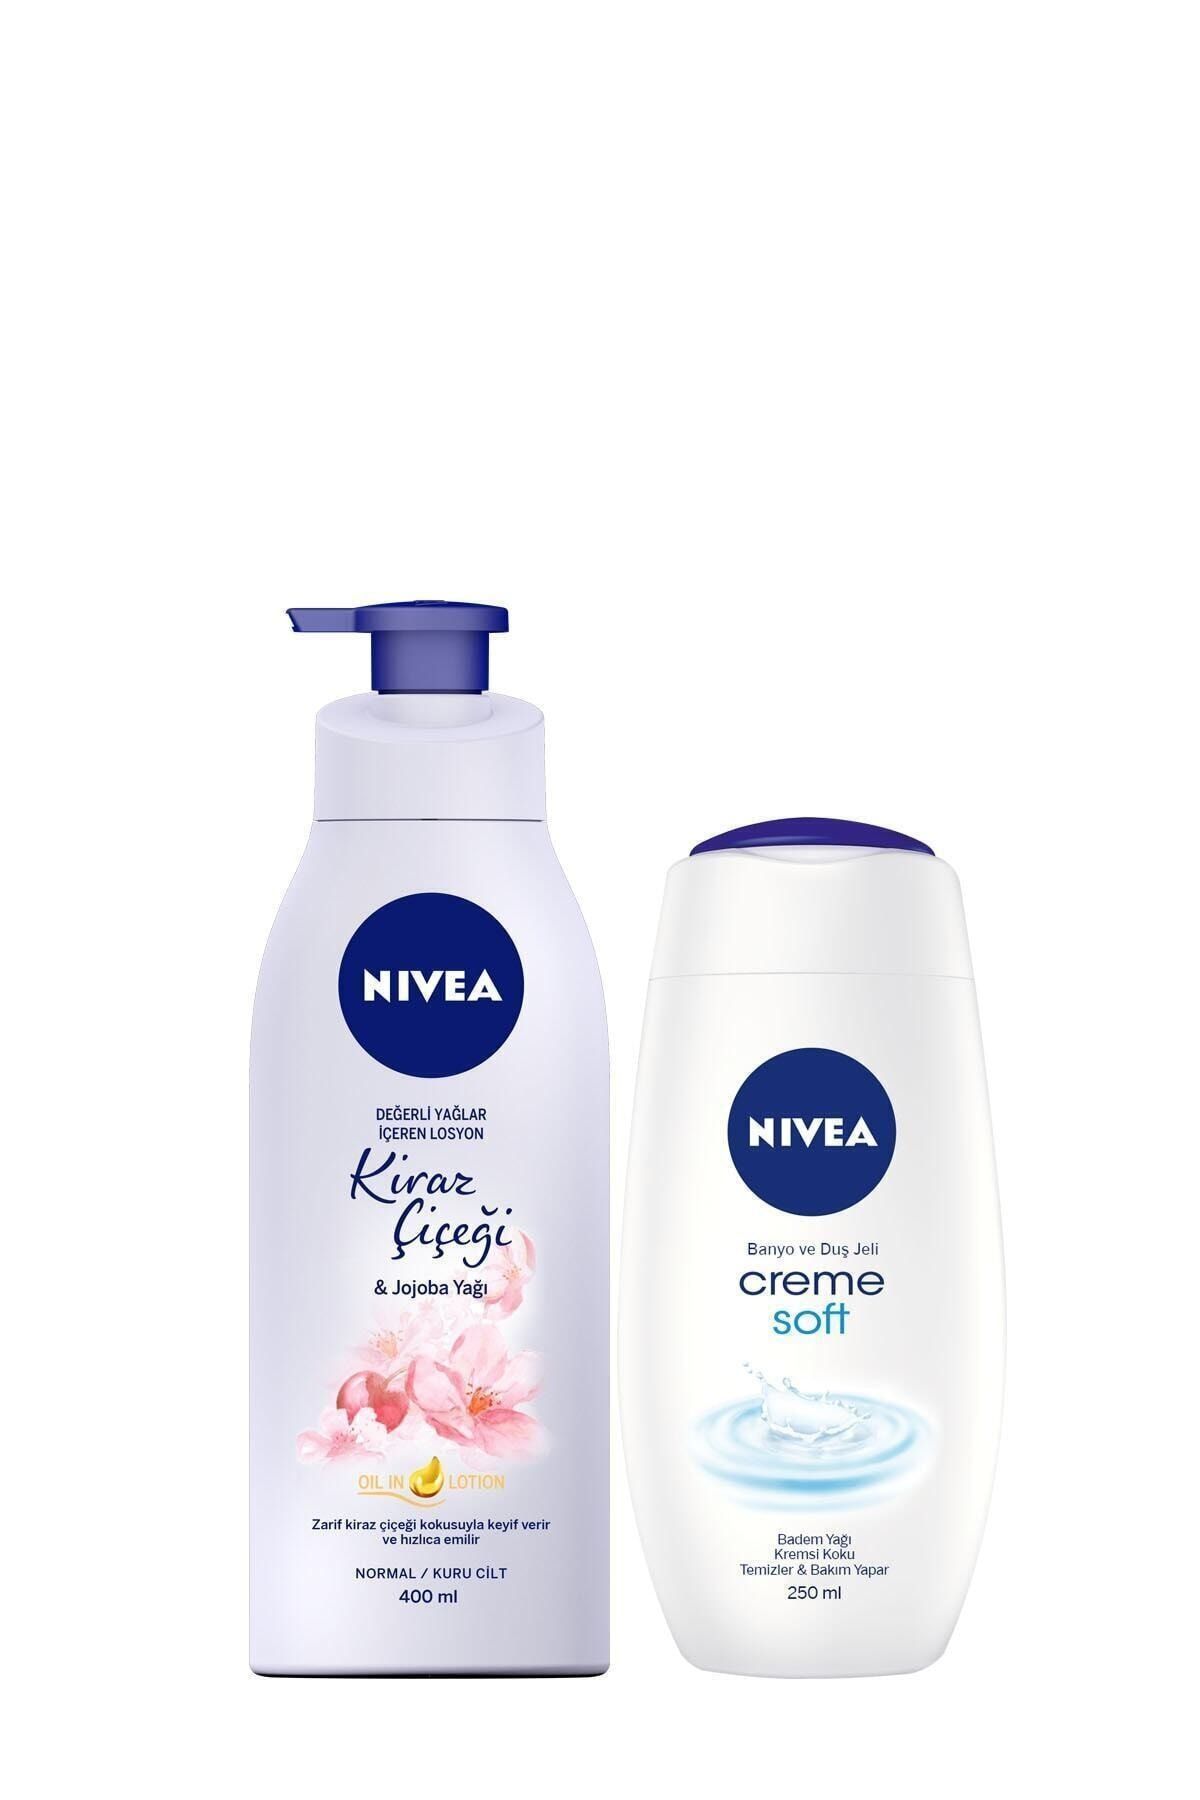 NIVEA Değerli Yağlar İçeren Losyon Kiraz Çiçeği & Jojoba Yağı 400 ml + Duş Jeli Crème Soft 250 ml